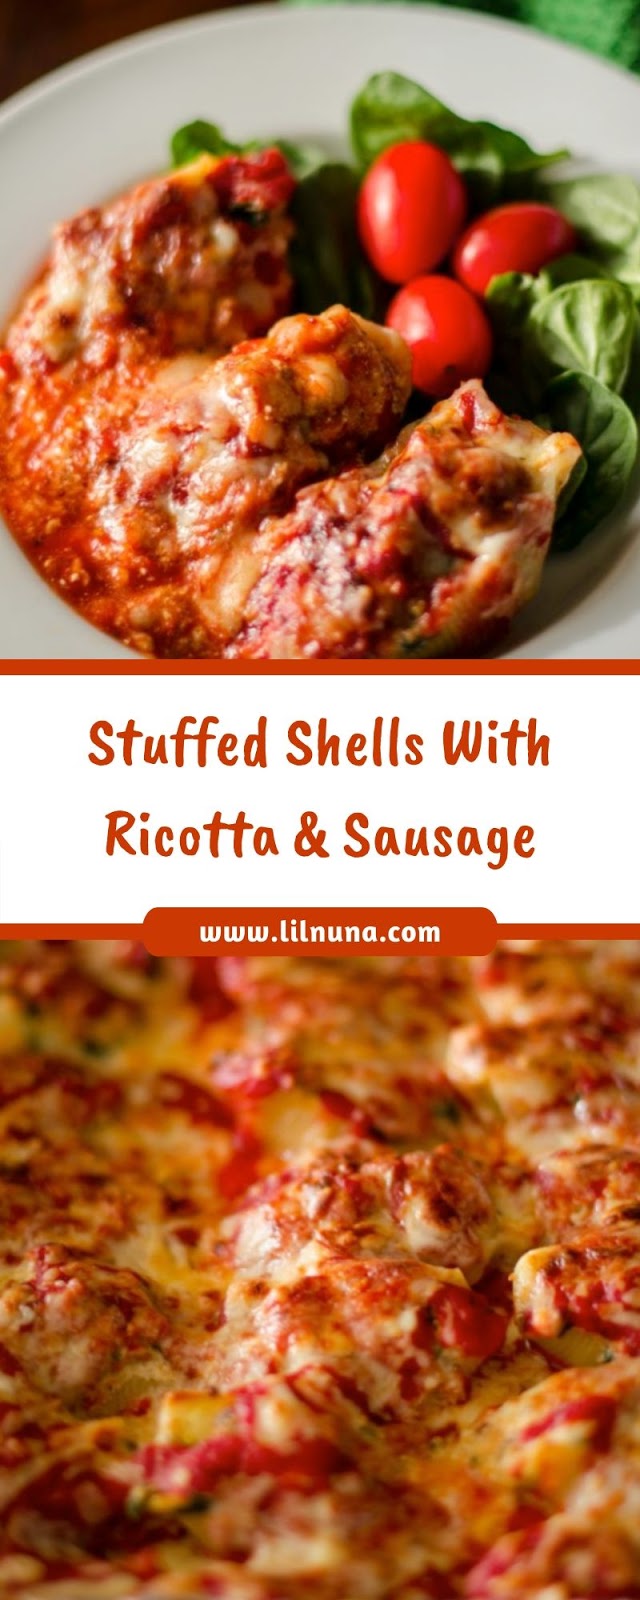 Stuffed Shells With Ricotta & Sausage